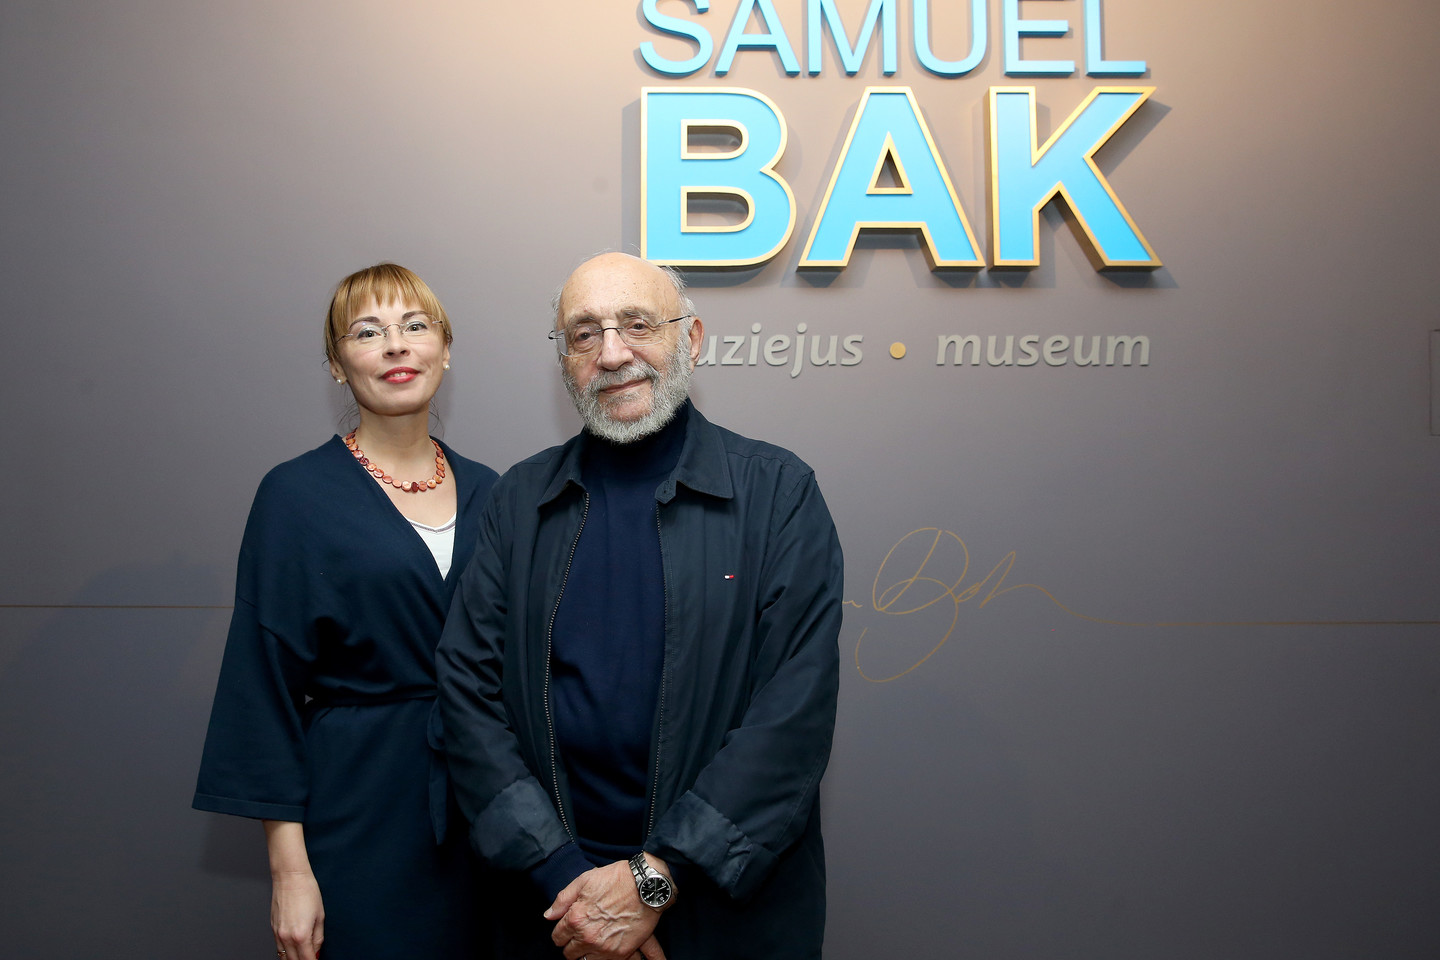 Vilniuje jau veikia naujas S.Bako muziejus.<br>R.Danisevičiaus nuotr.